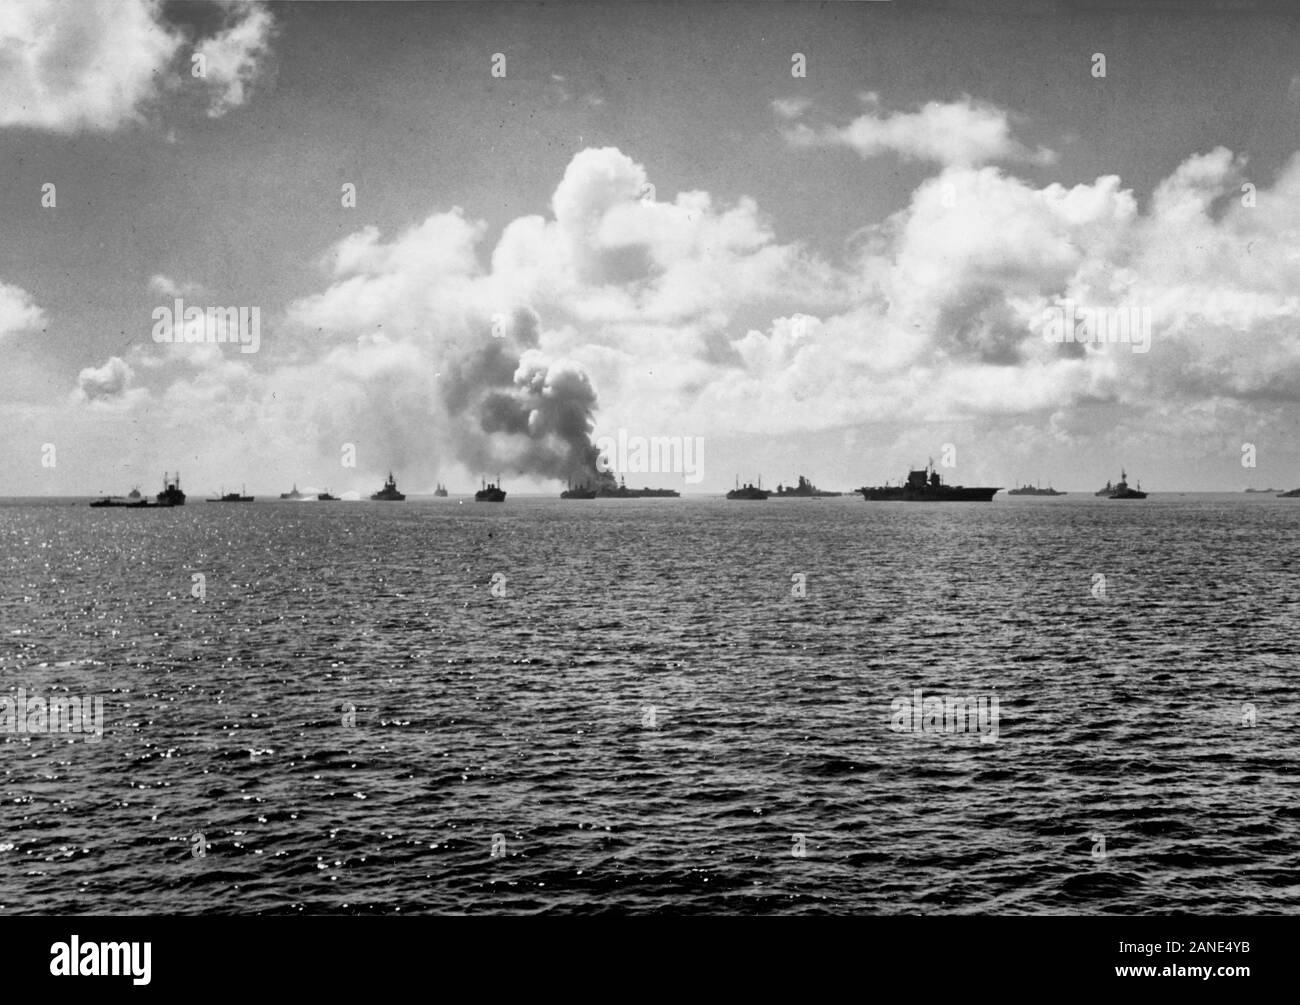 Bikini Atoll Atombombe Tests, 1946: Blick auf das Ziel der Flotte unmittelbar nach der 'Lage' antenne Burst am 1. Juli 1946. Der Flugzeugträger USS Saratoga (CV-3) ist in der Mitte mit dem USS Independence (CVL-22) brennen mit Links - Mitte. Die ex-japanischen Schlachtschiff Nagato ist zwischen ihnen. Hinweis das Schiff an, die links neben dem Schlachtschiff USS Pennsylvania (BB-38), die versuchen, die Radioaktivität mit (verschmutzt) Wasser aus der Lagune zu waschen. Stockfoto